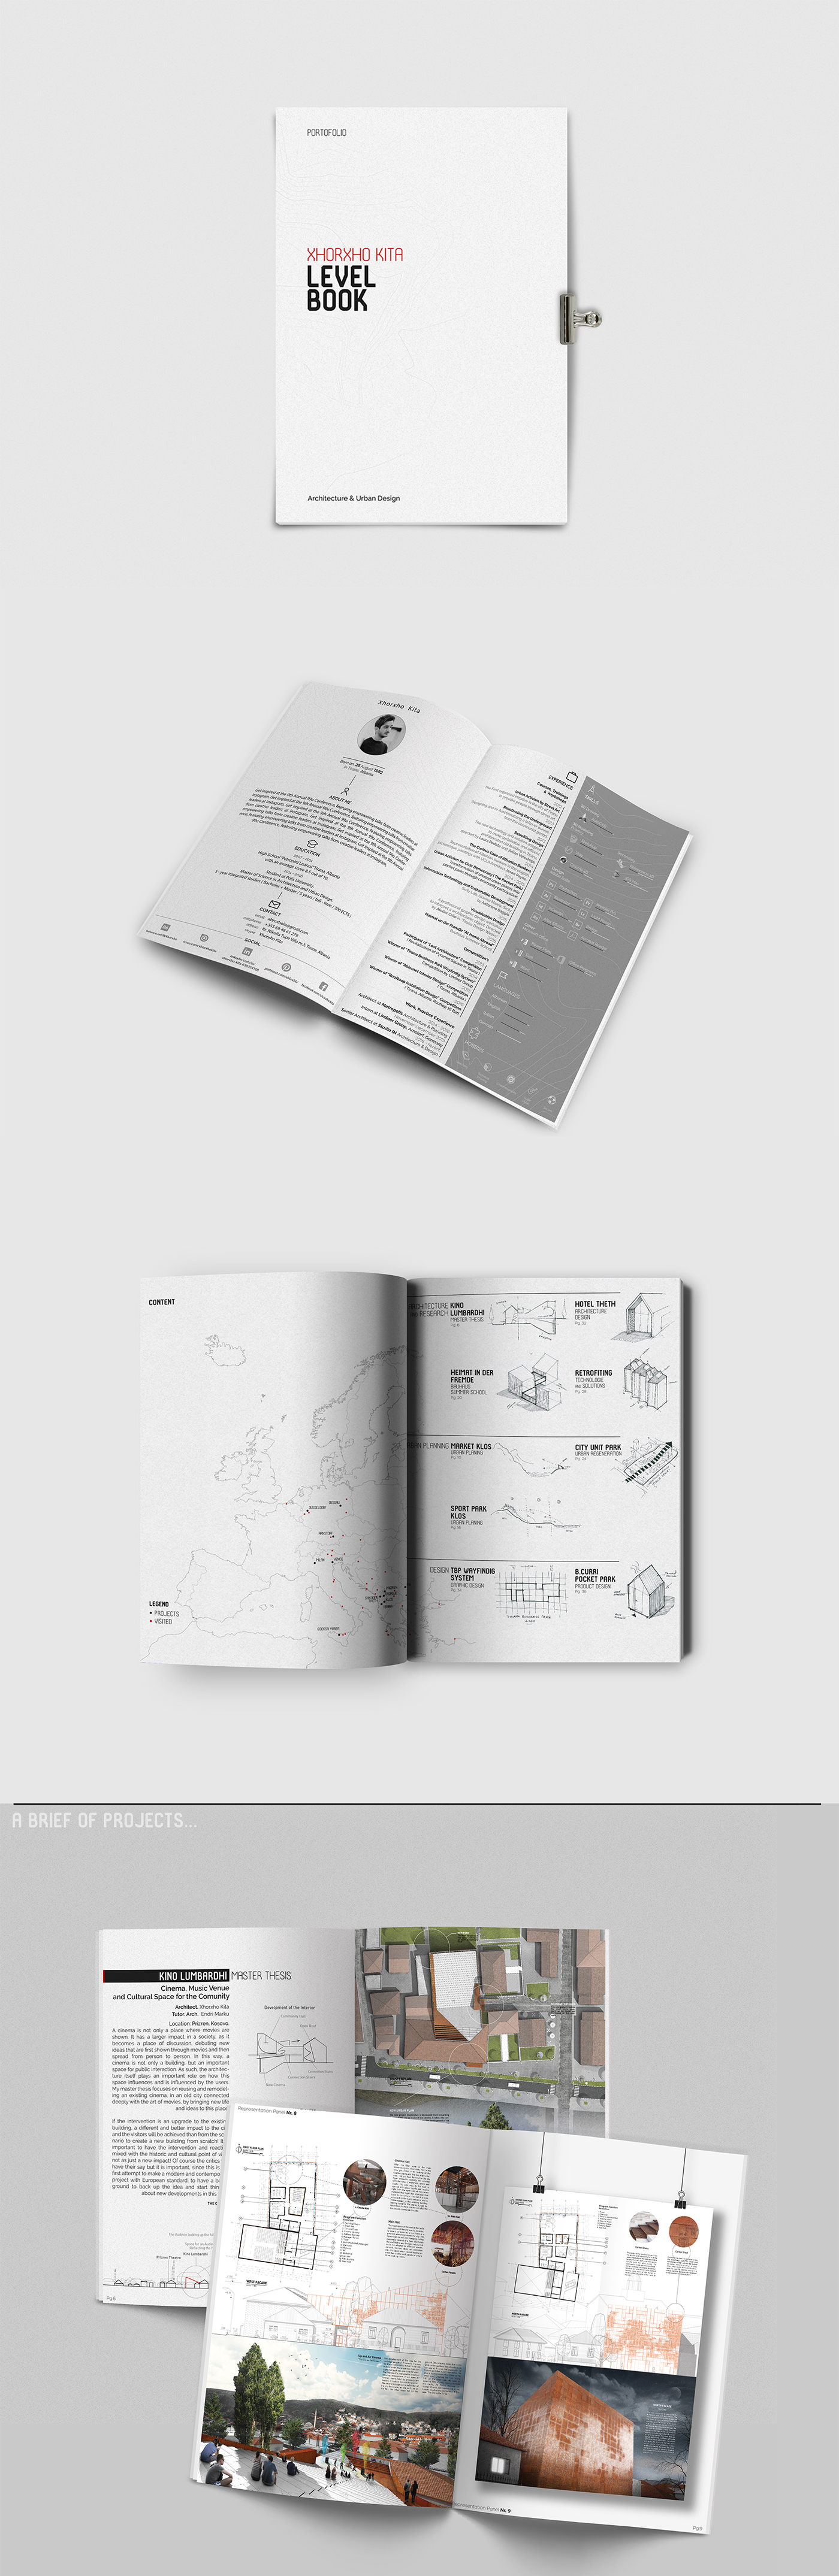 portfolio architecture design Resume book graphic ILLUSTRATION 